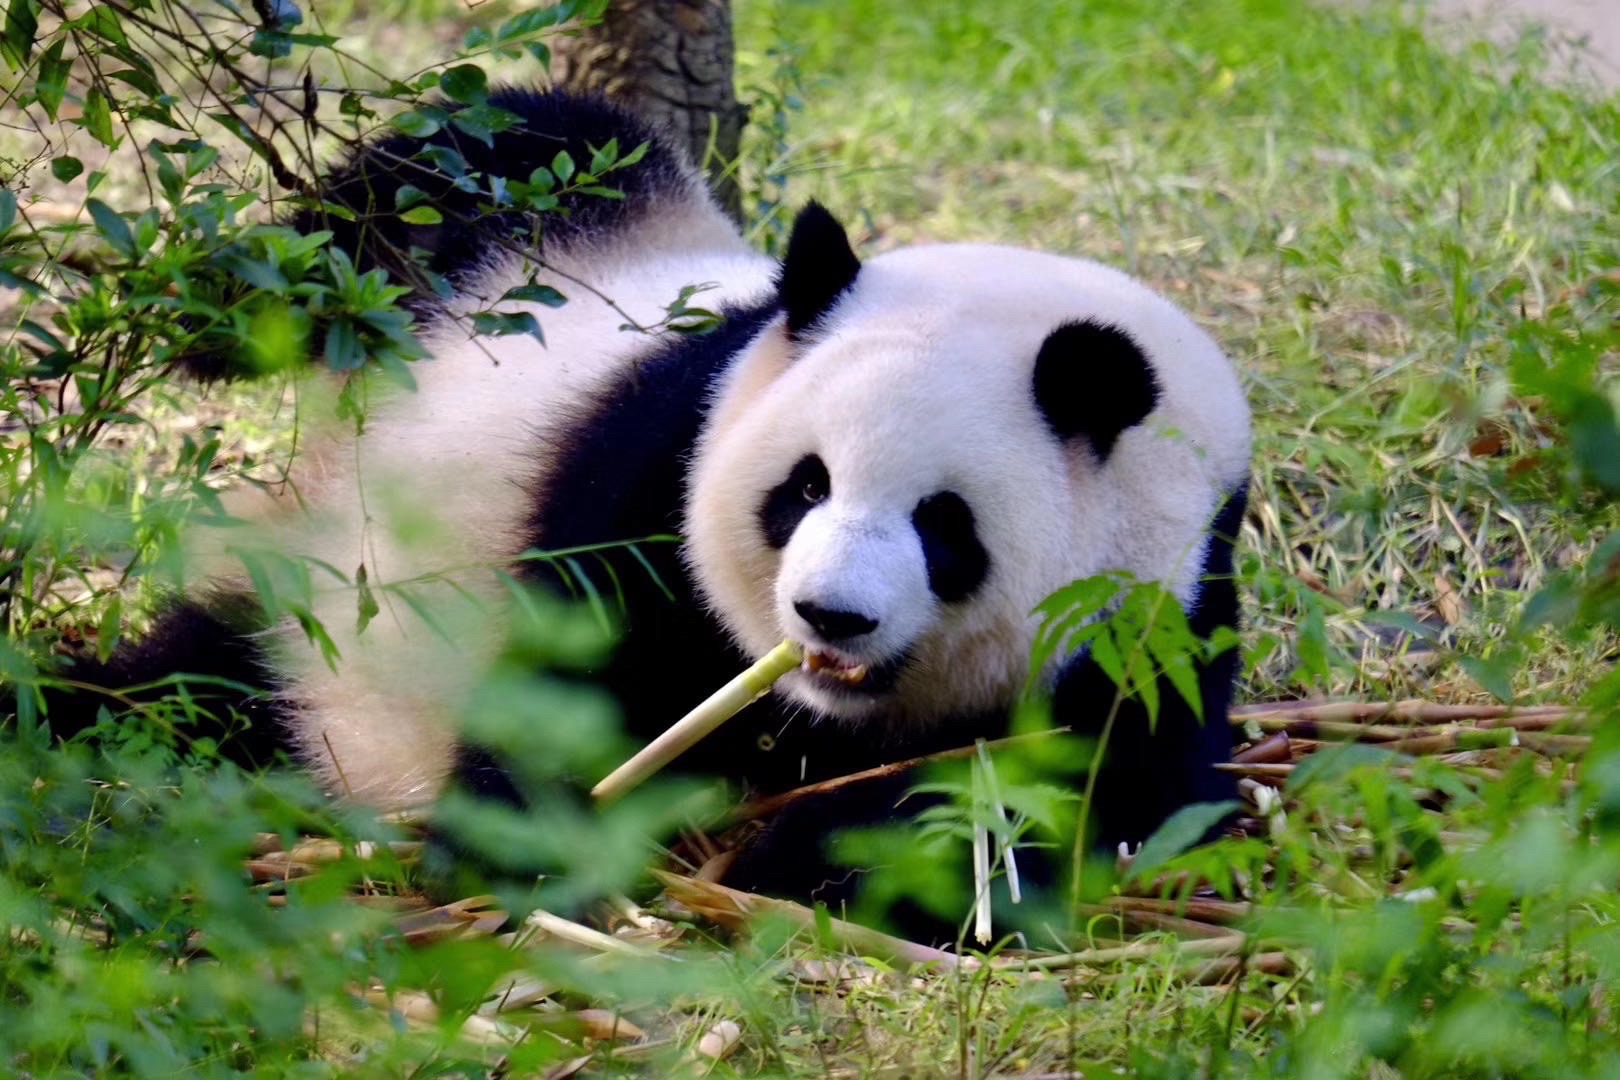 天府之国看憨态可掬的大熊猫 🐼🐼🐼 来成都的话，看大熊猫🐼可以说是必打卡的项目之一了。如果你正好去都